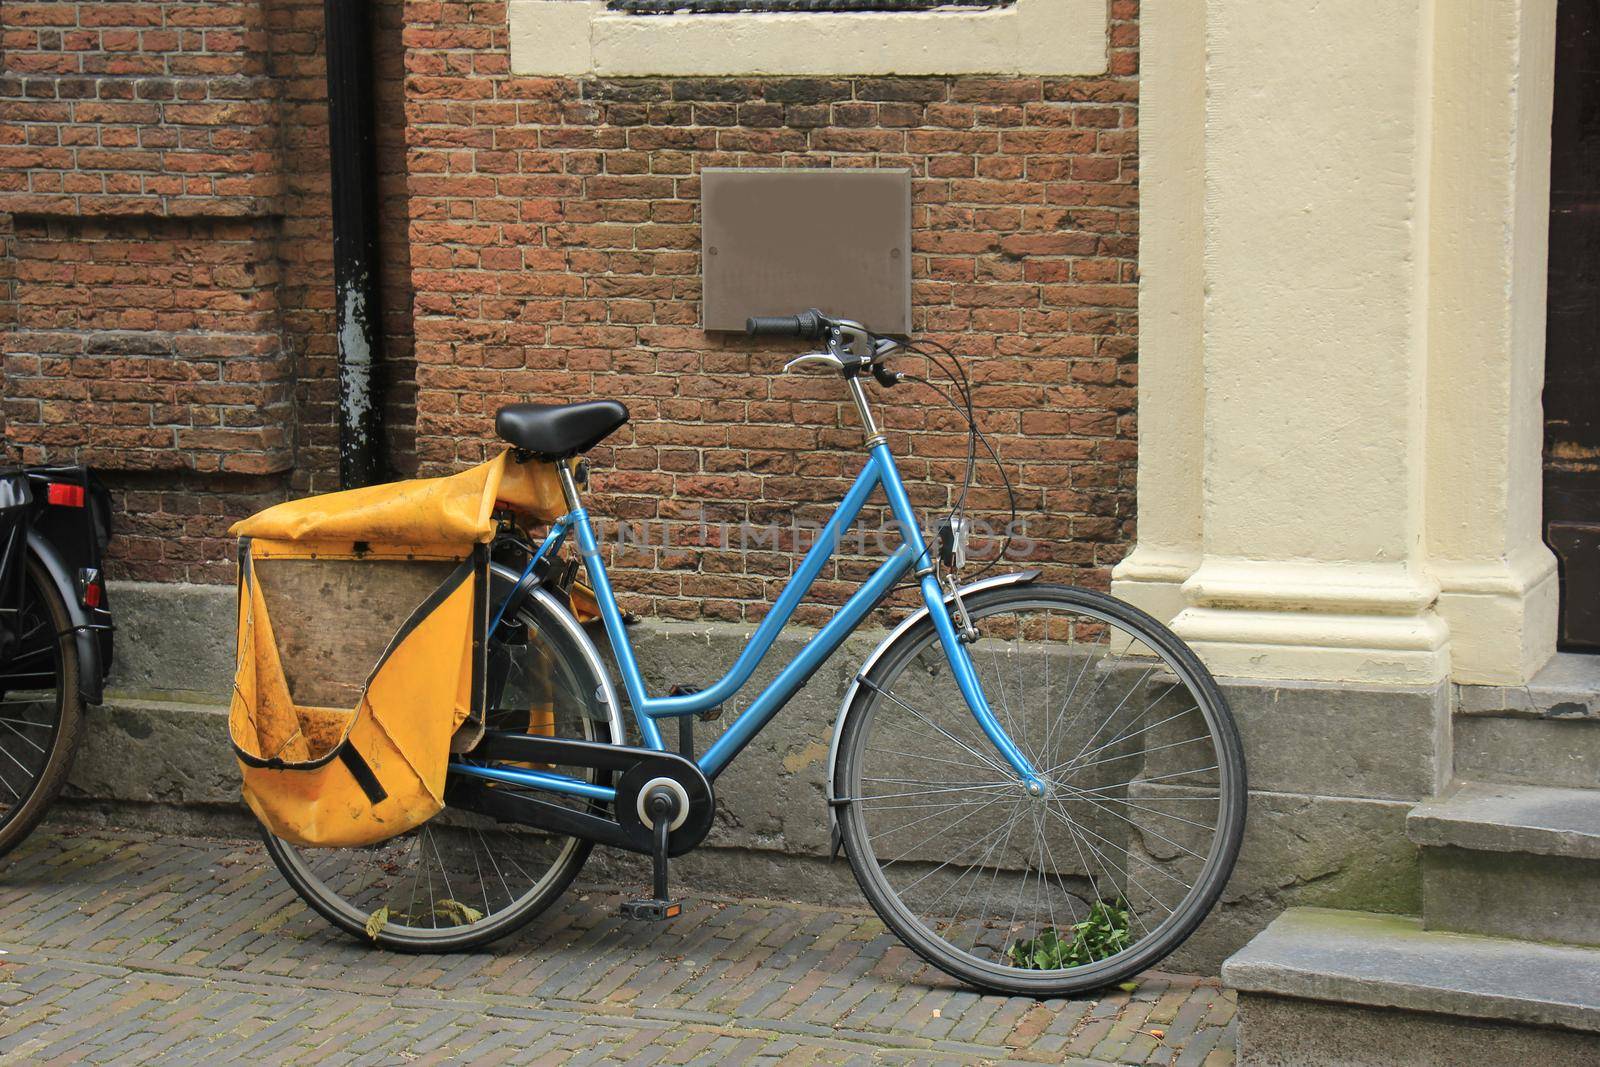 An old light blue bike parked near a brick wall